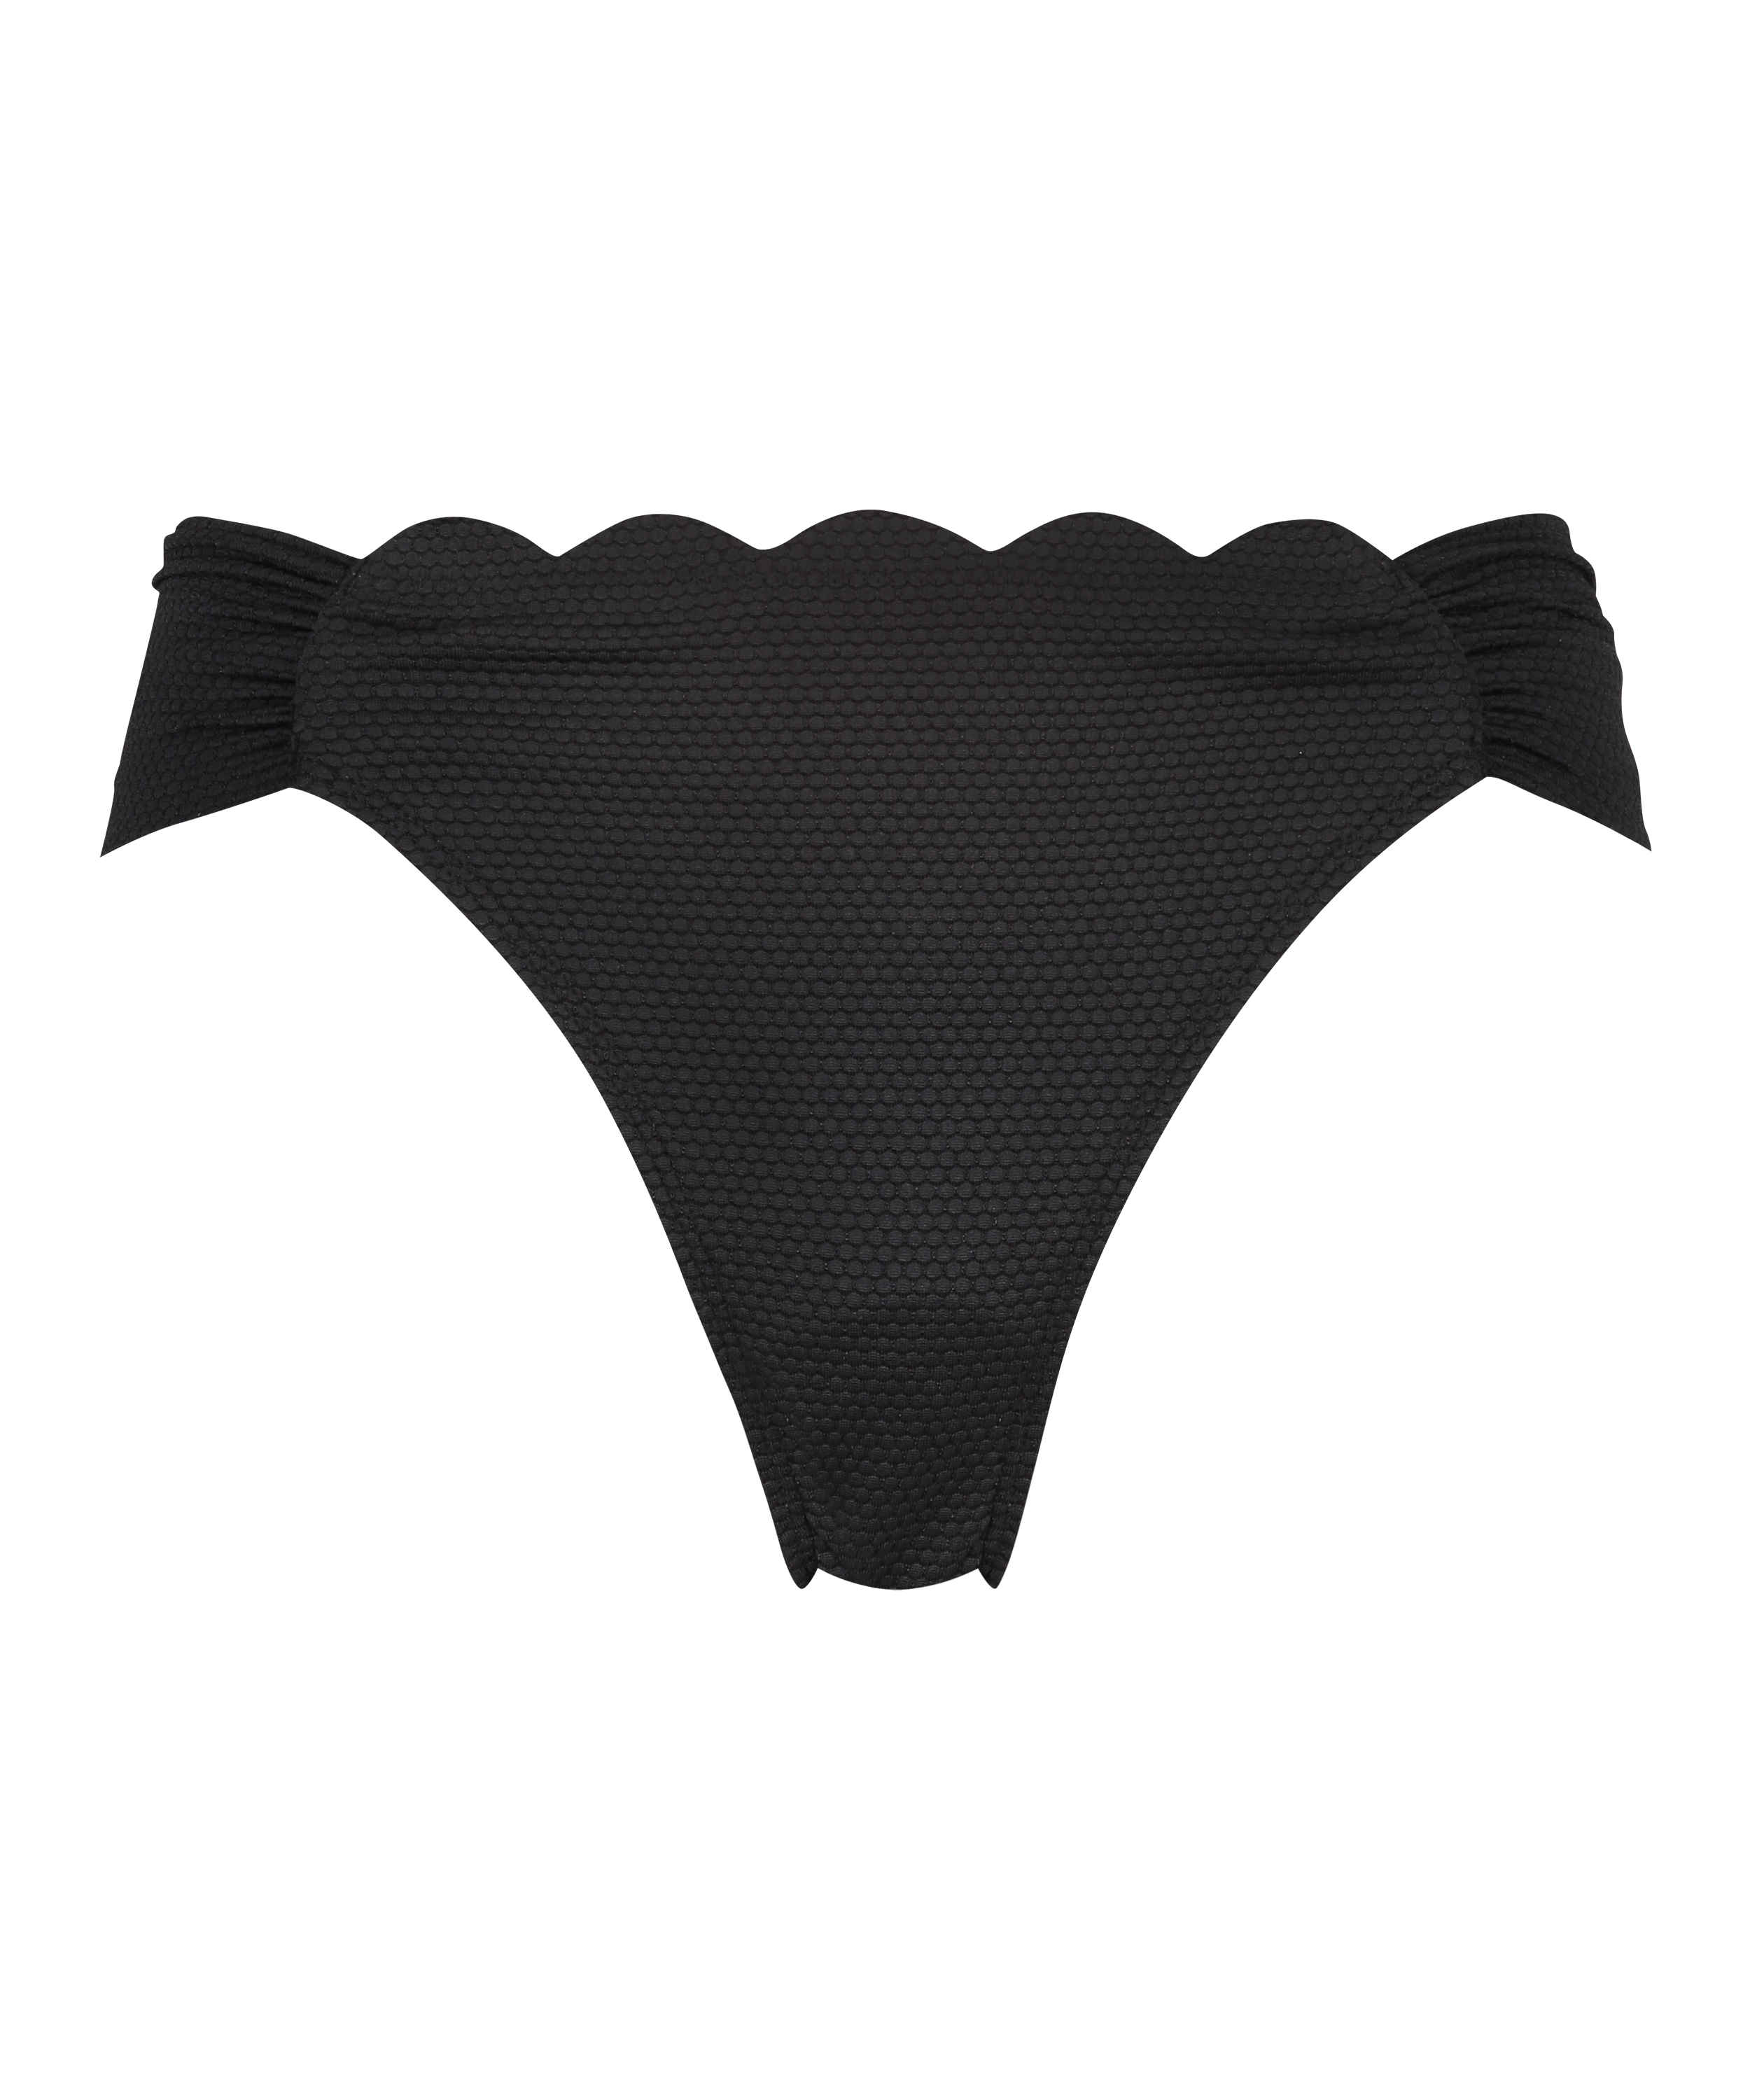 Bikini bottoms Rio Scallop, Black, main